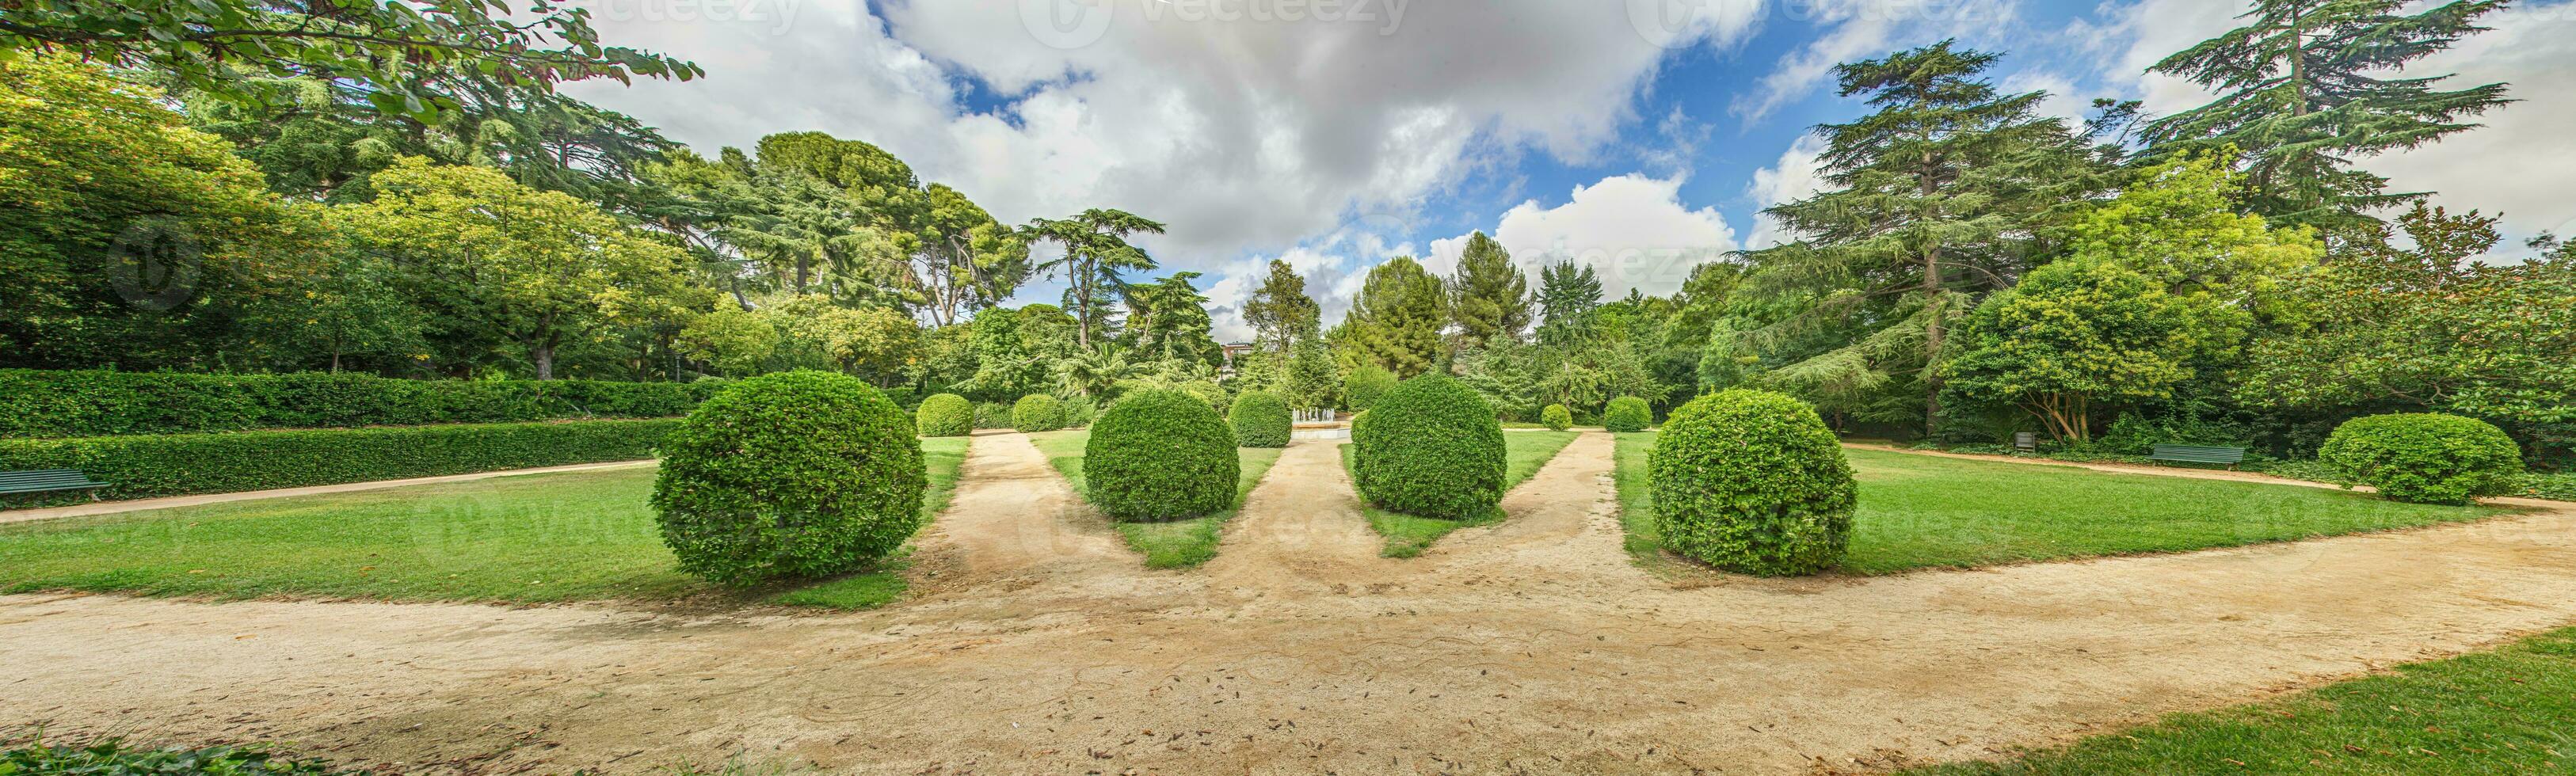 impresión desde un bien mantenido jardín con precisamente cortar arbustos en verano foto